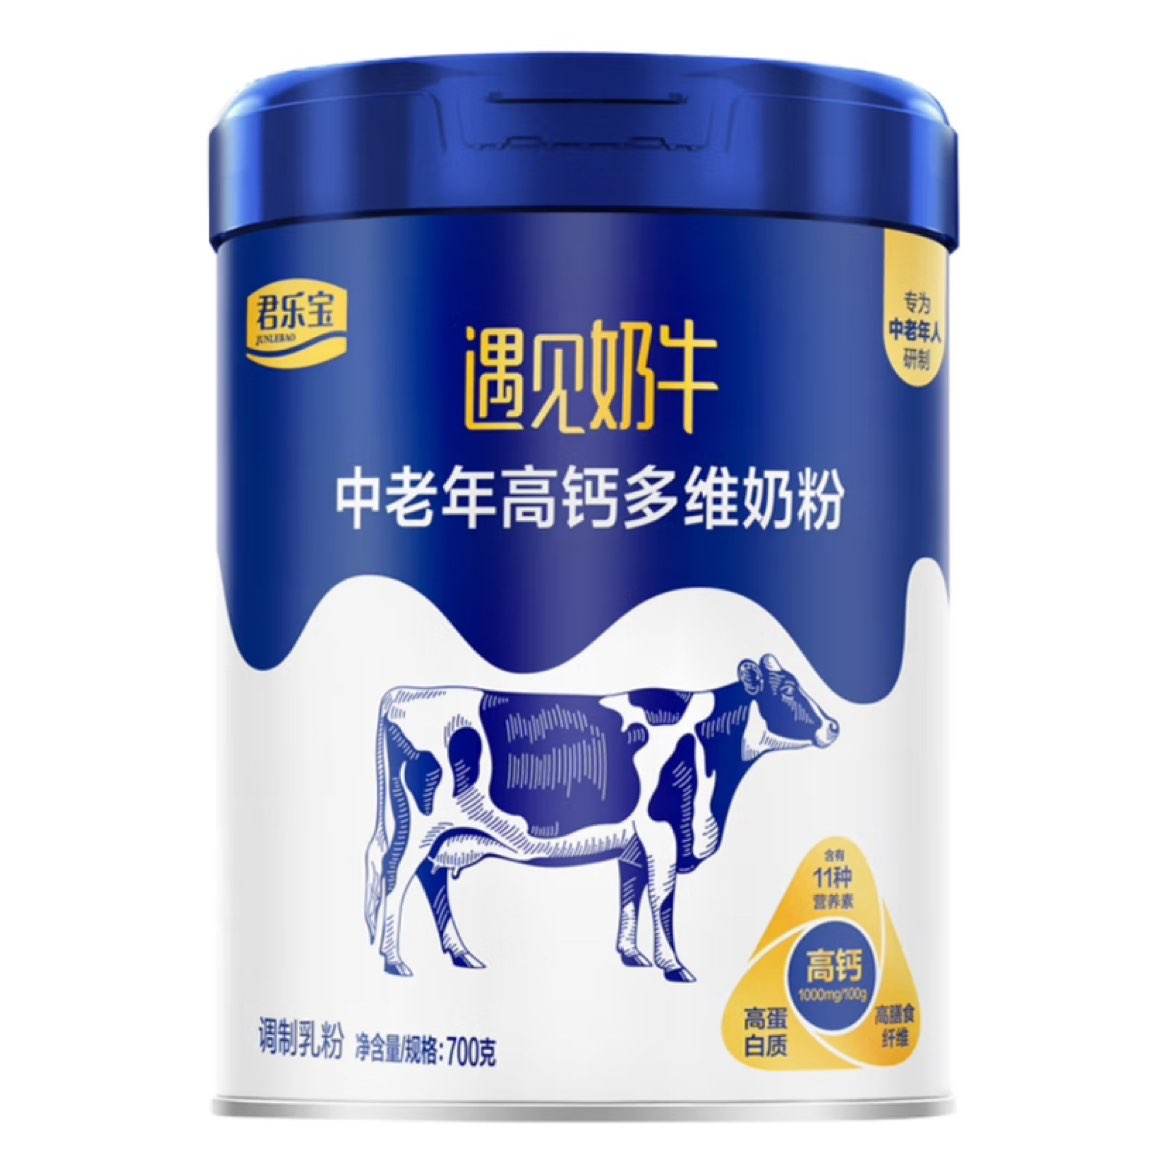 君乐宝遇见奶牛中老年高钙多维奶粉700g 1罐 39.41元